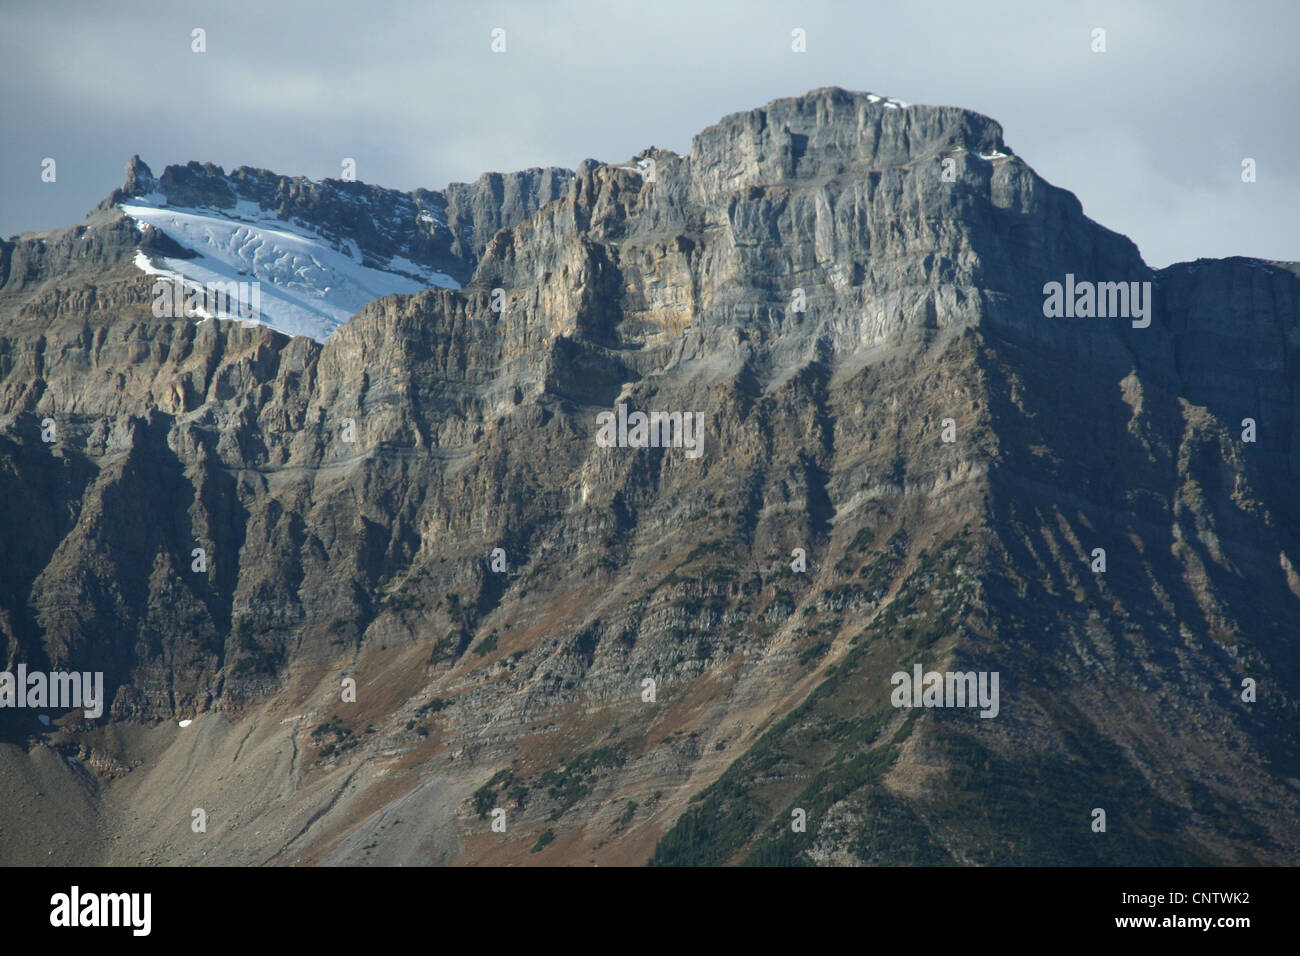 Les montagnes sculptées de Glacier et de crêtes, Columbia Icefields Parkway, Rocheuses, Banff, Jasper, Alberta, Canada Banque D'Images